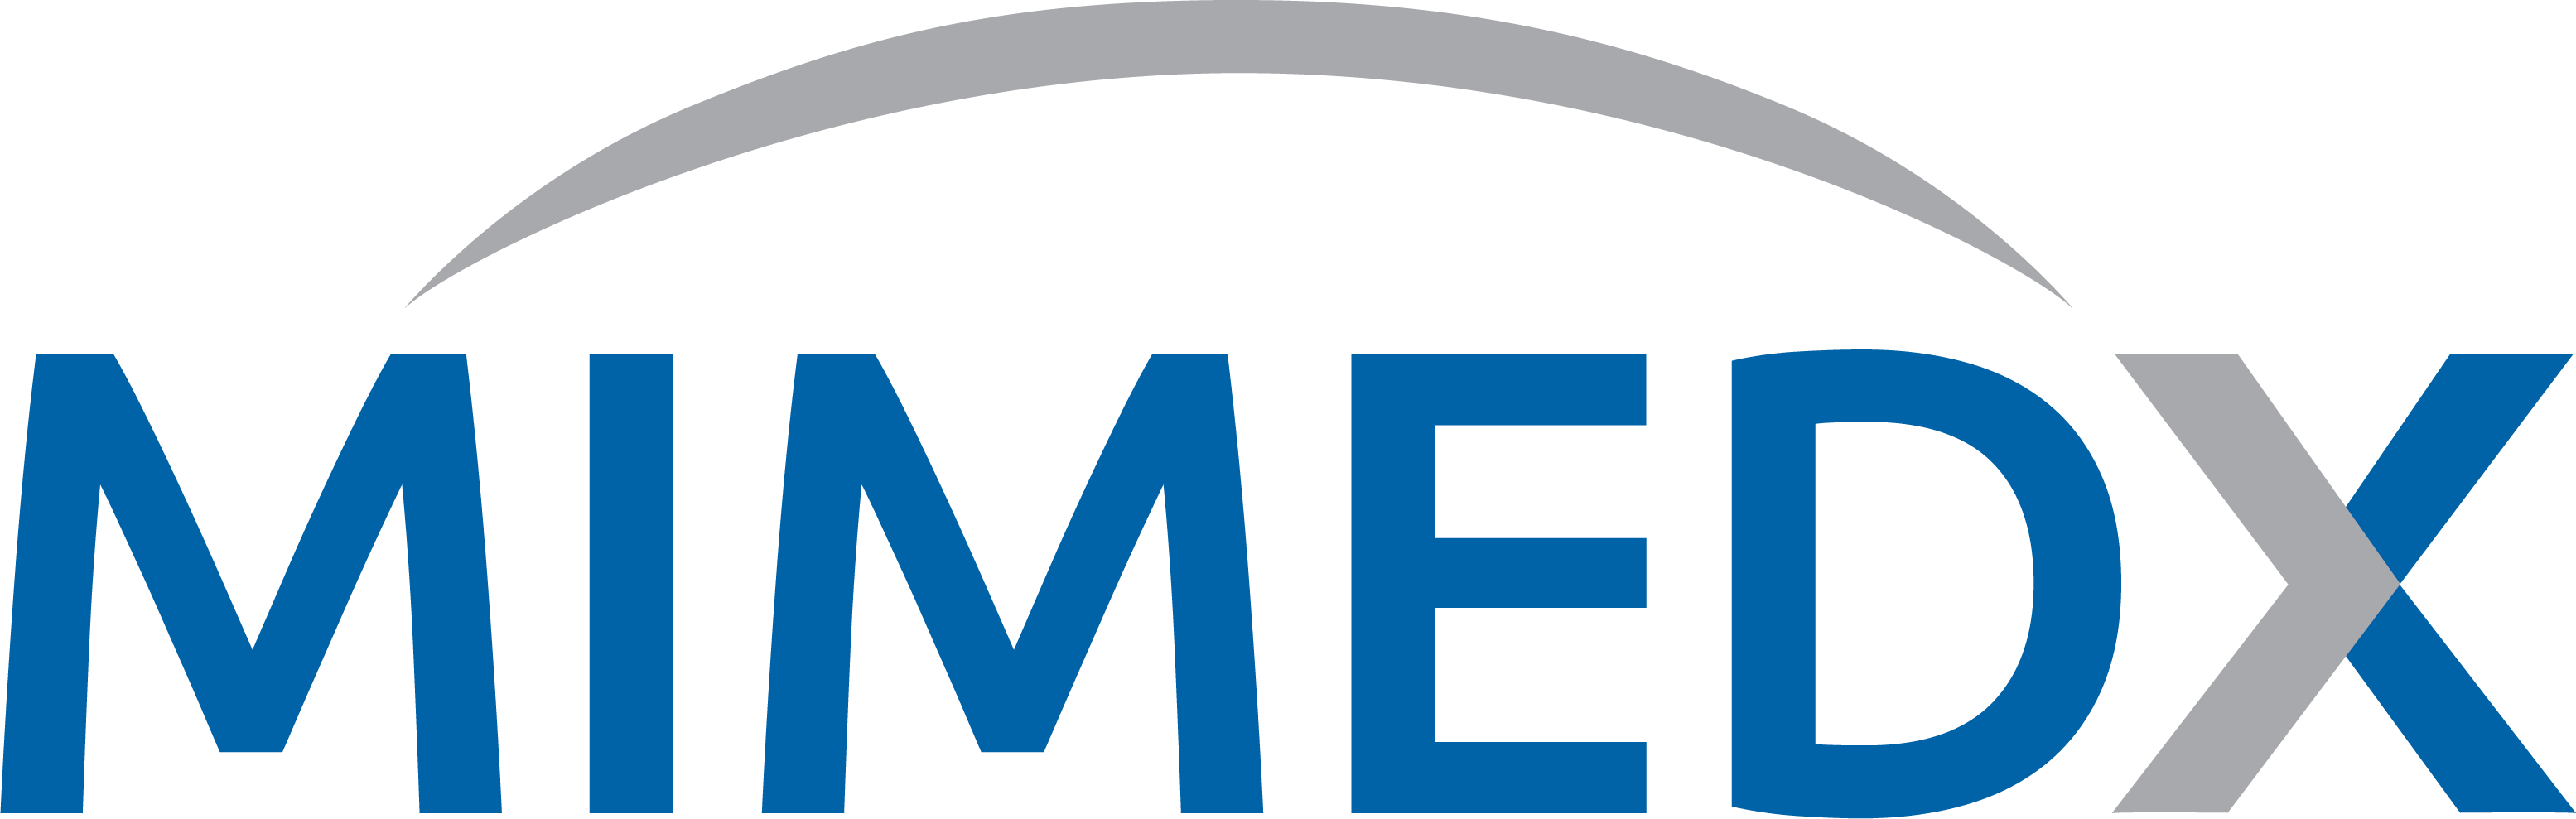 Mimedx logo